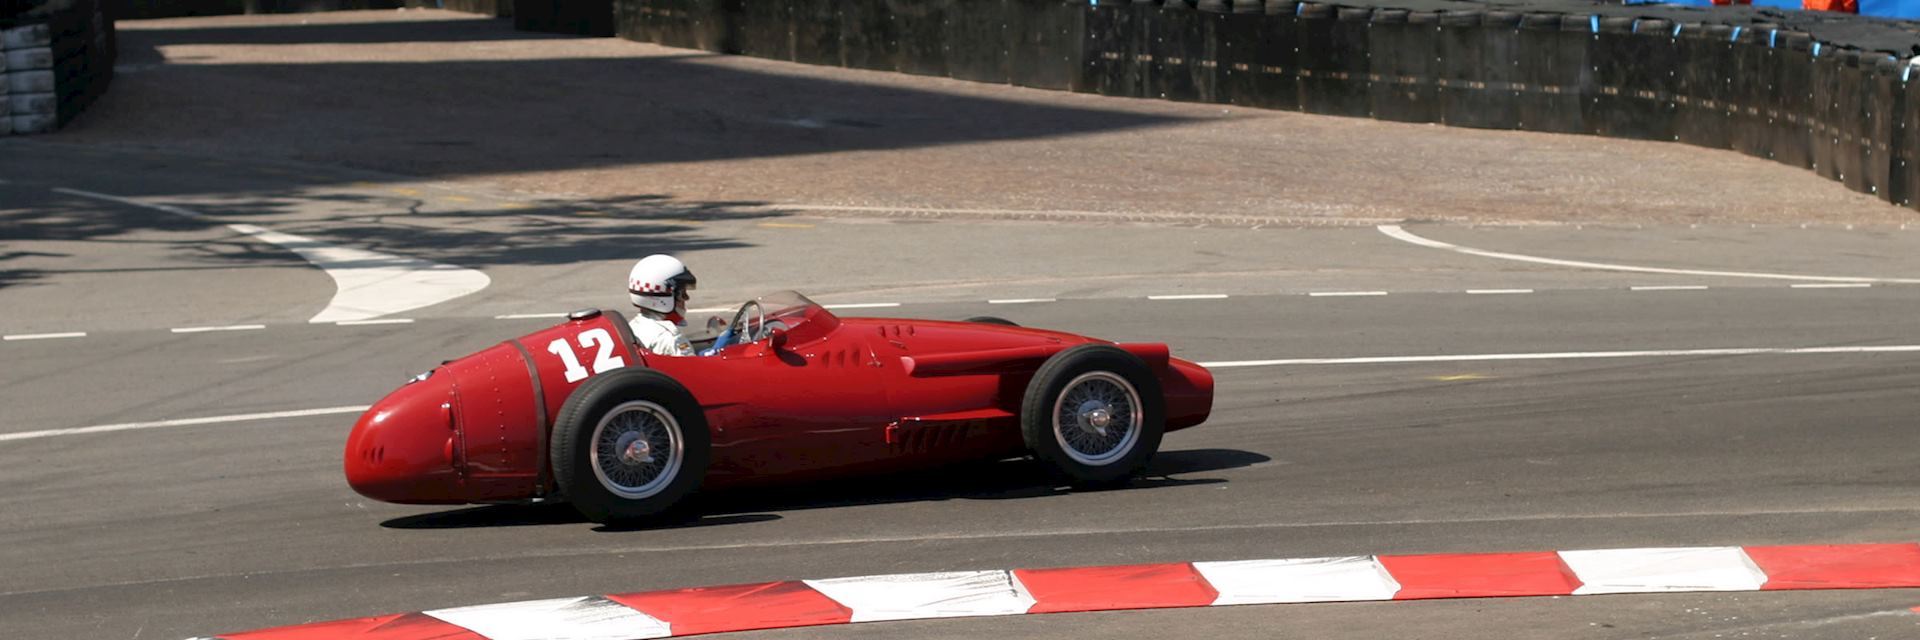 Monaco race track